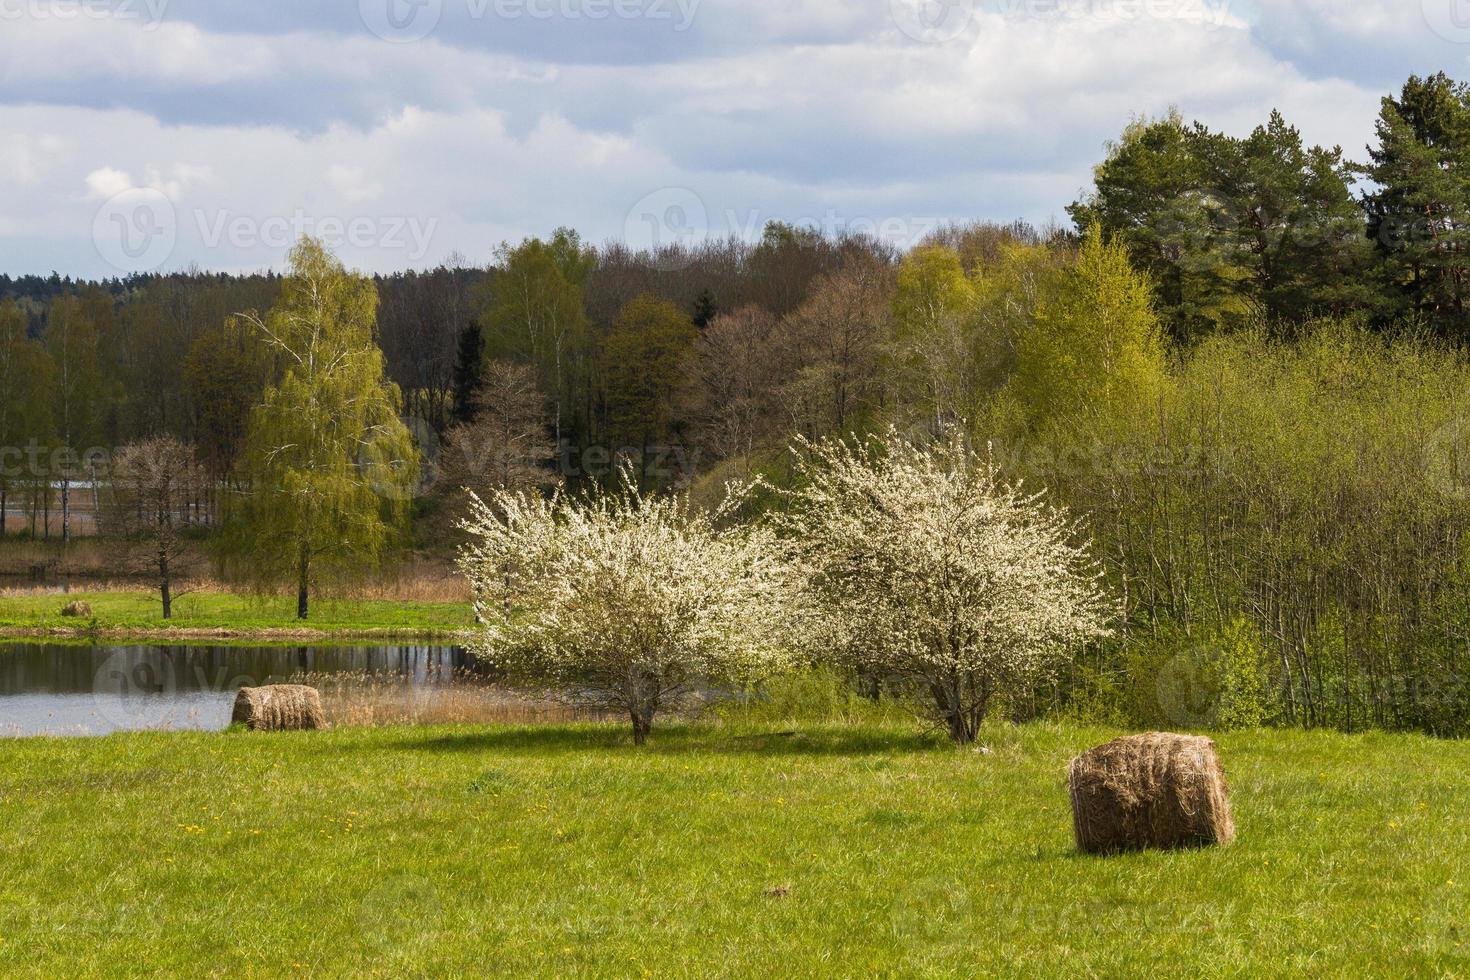 paesaggi a partire dal il lettone campagna nel primavera foto